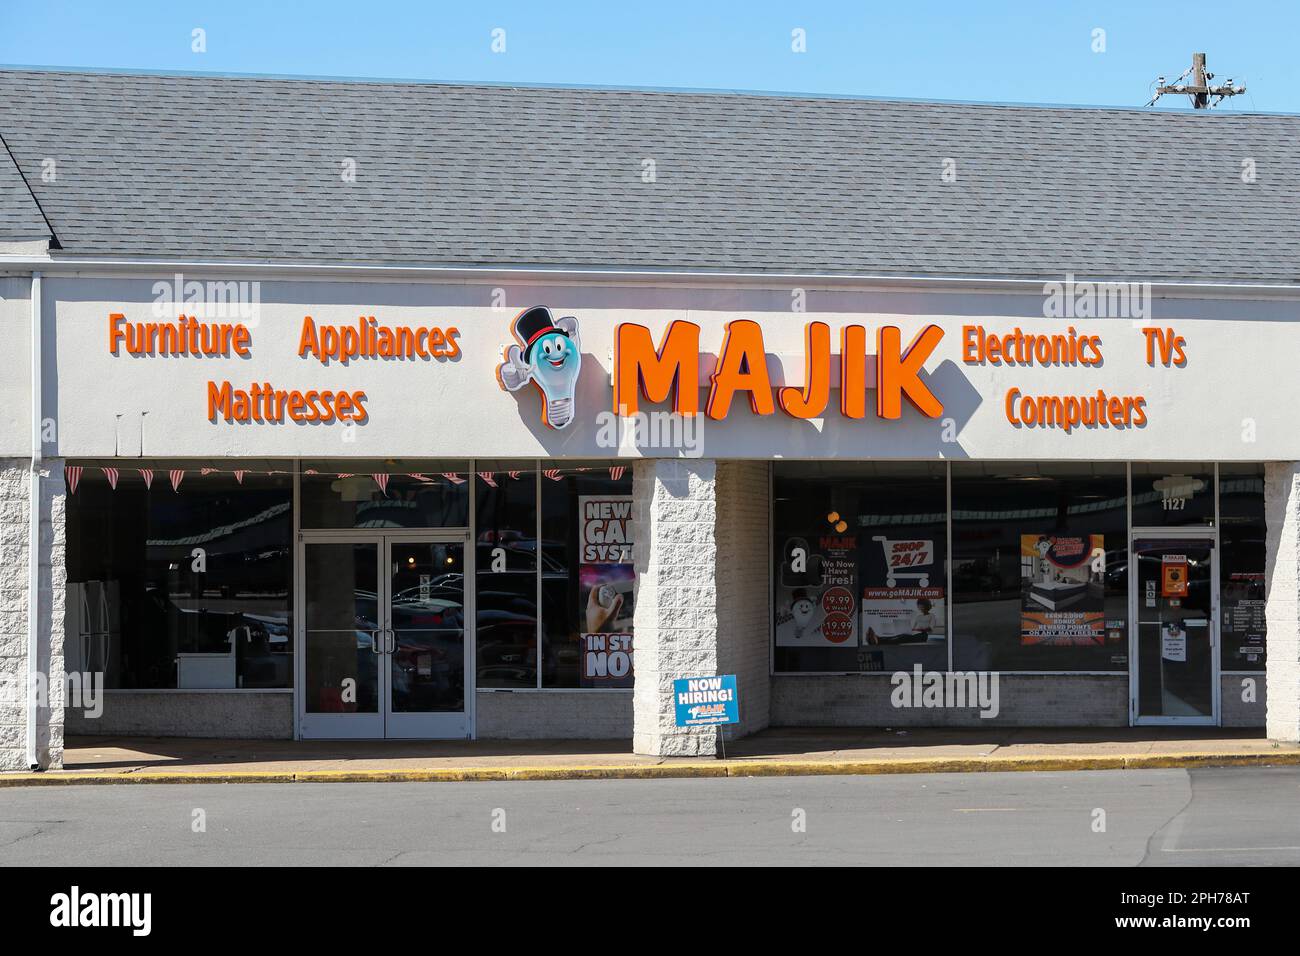 Una vista esterna di un negozio di mobili e elettrodomestici Majik Rent-to-Own presso il Sunbury Plaza. MAJIK è un'azienda a conduzione familiare con 13 sedi nella Pennsylvania centrale. Foto Stock